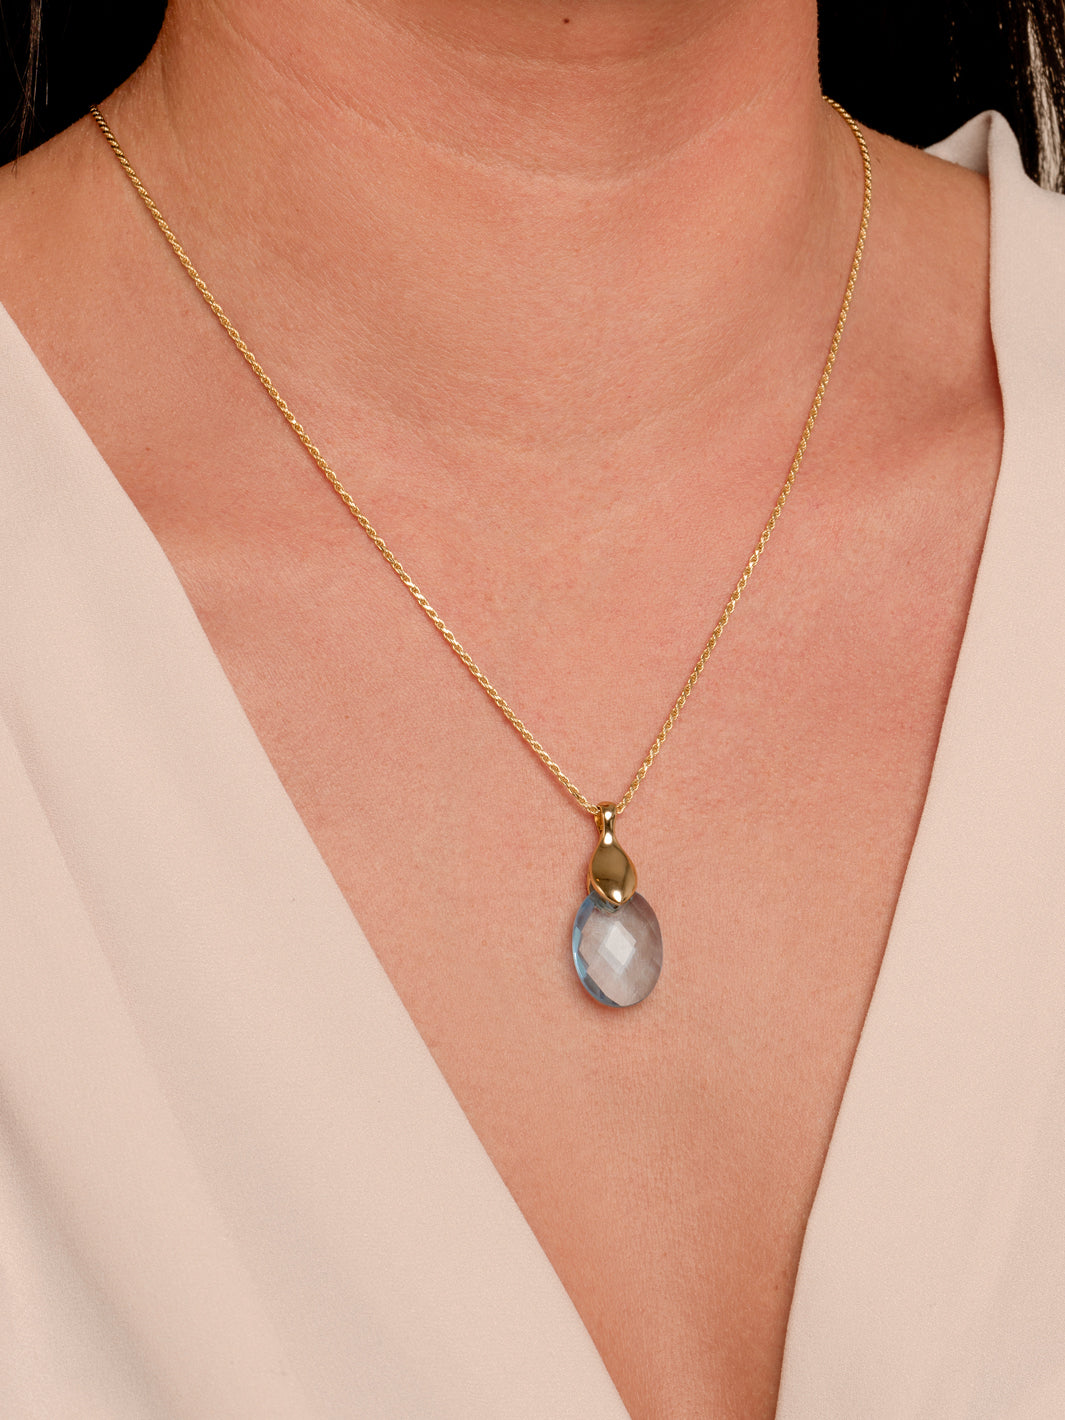 Aquamarine Quartz Medium Oval Necklace Gemstones